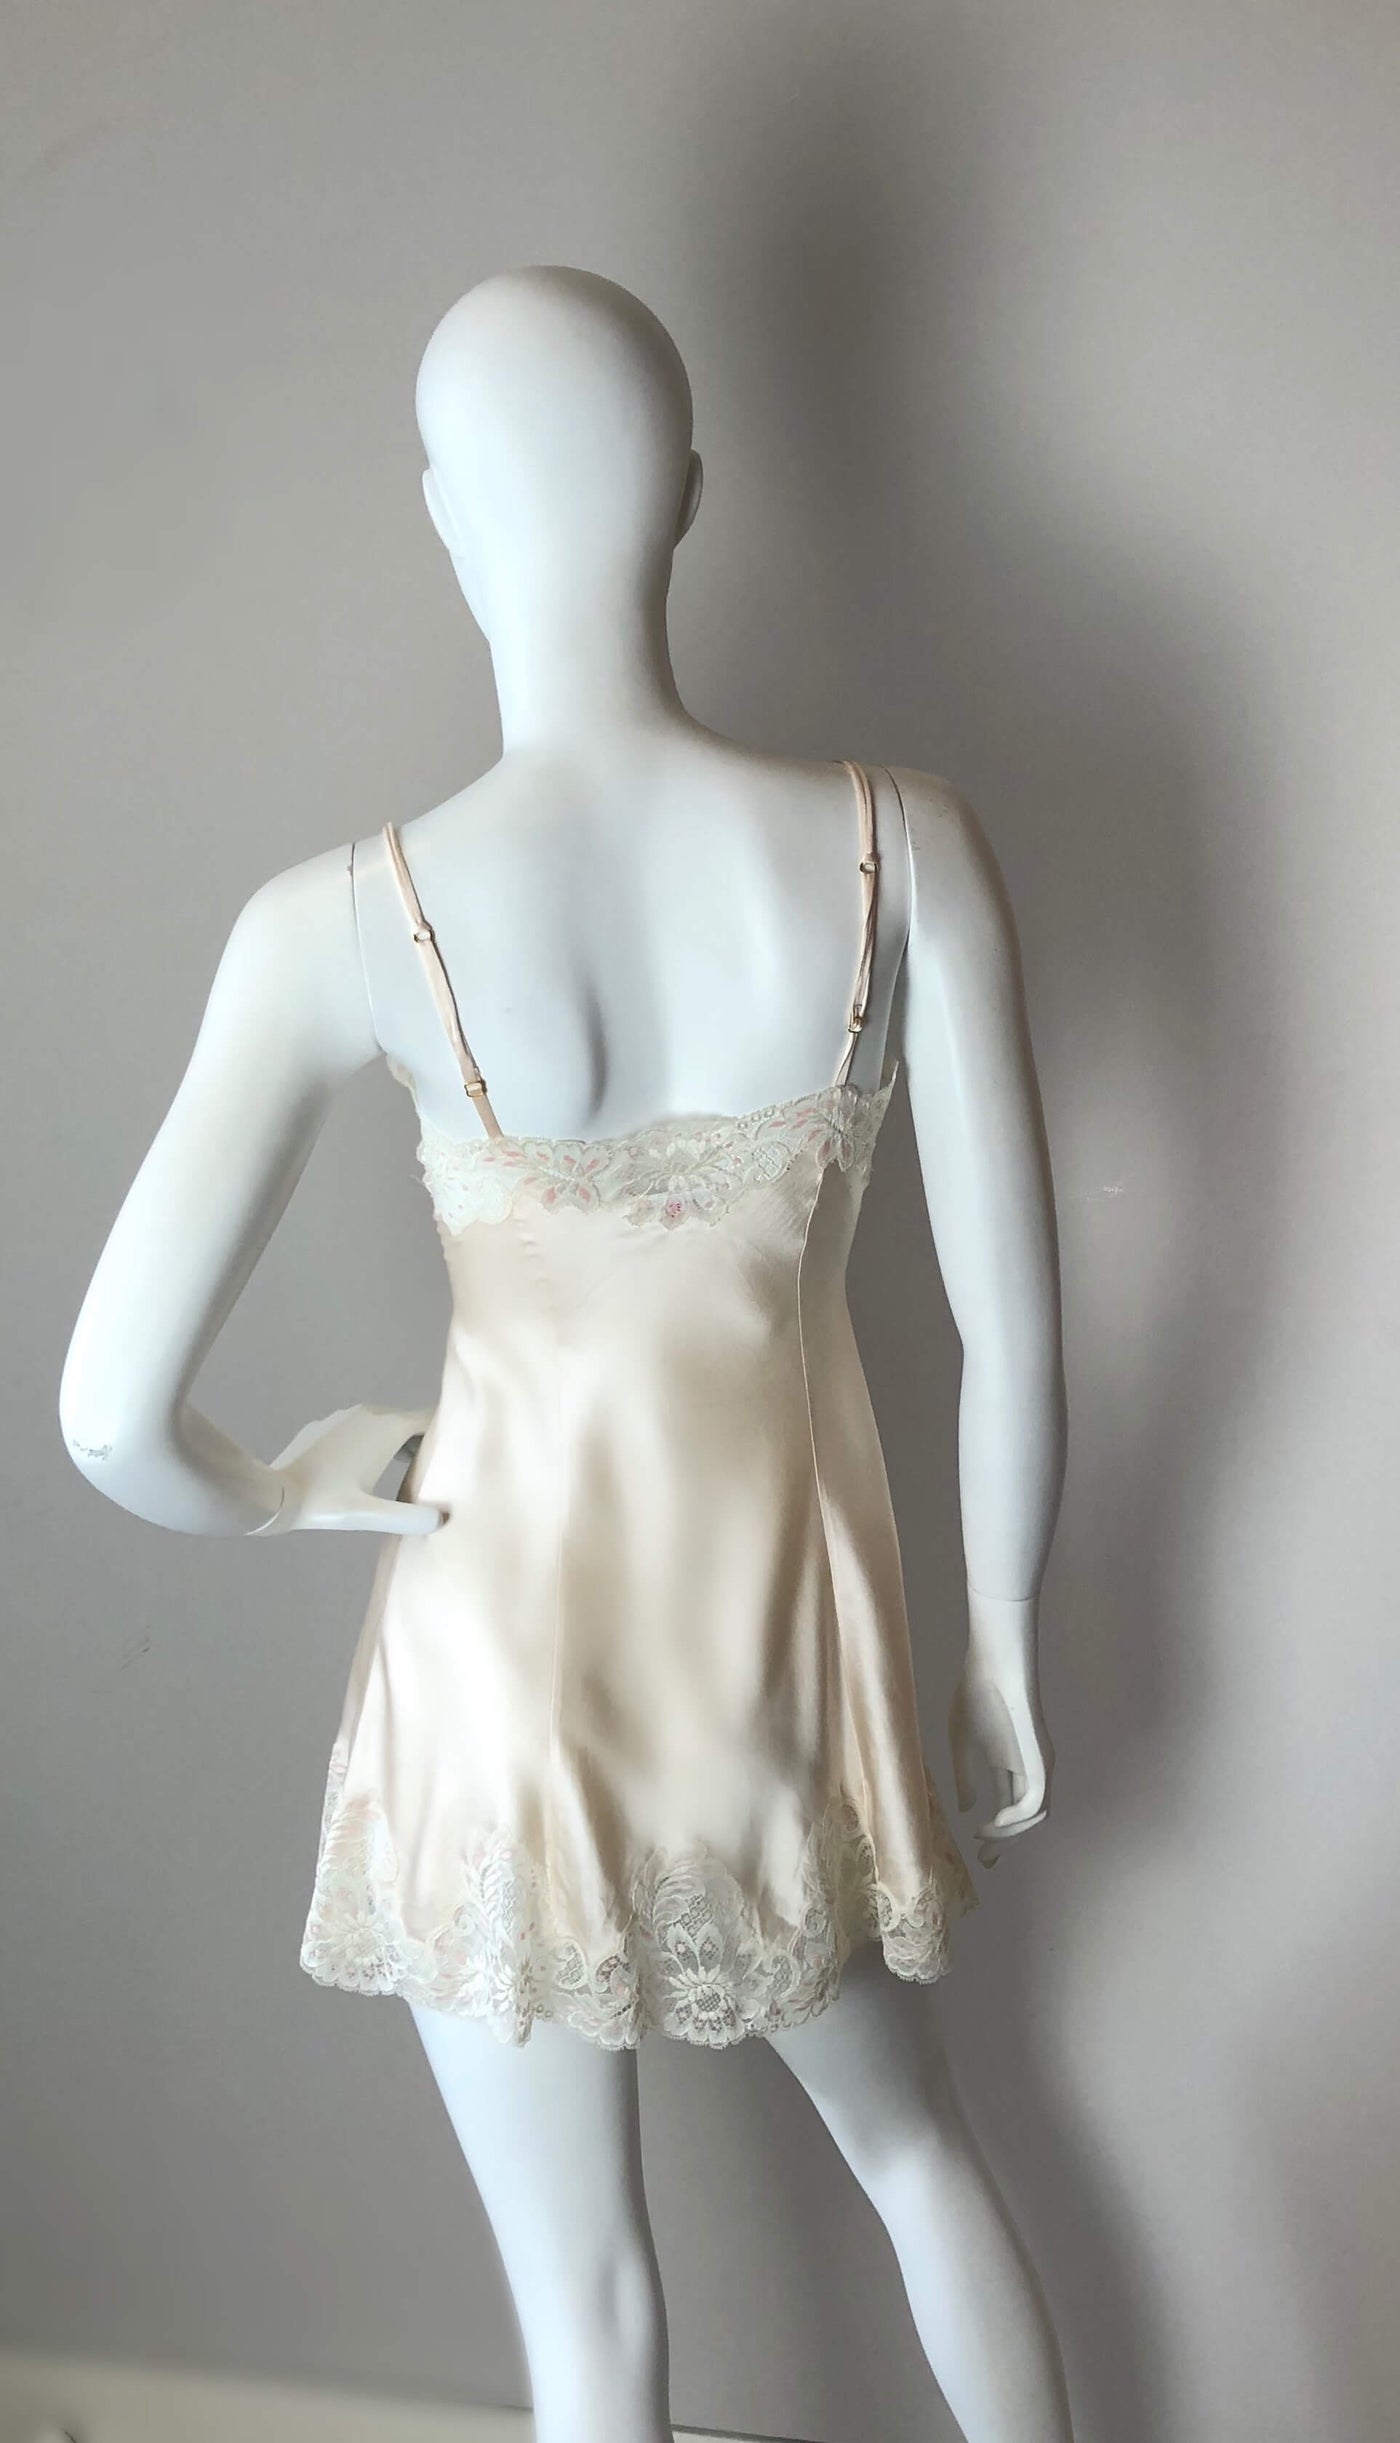 Peach Janet Reger silk dress